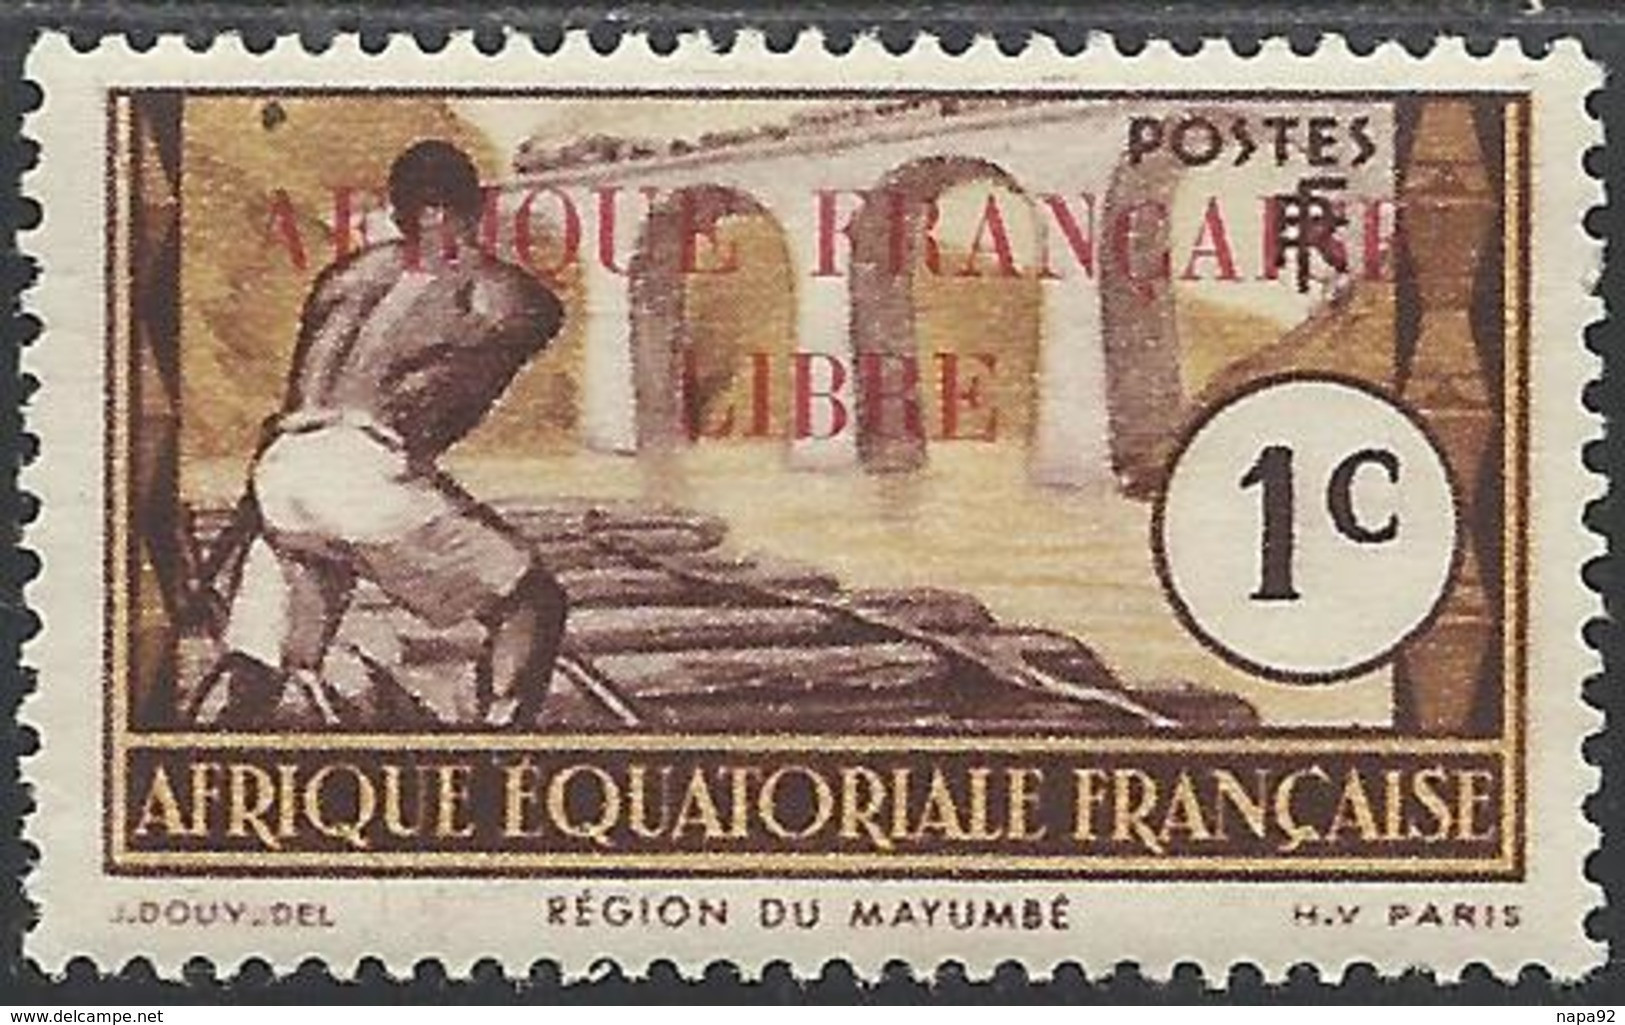 AFRIQUE EQUATORIALE FRANCAISE - AEF - A.E.F. - 1940 - YT 92** - Nuevos